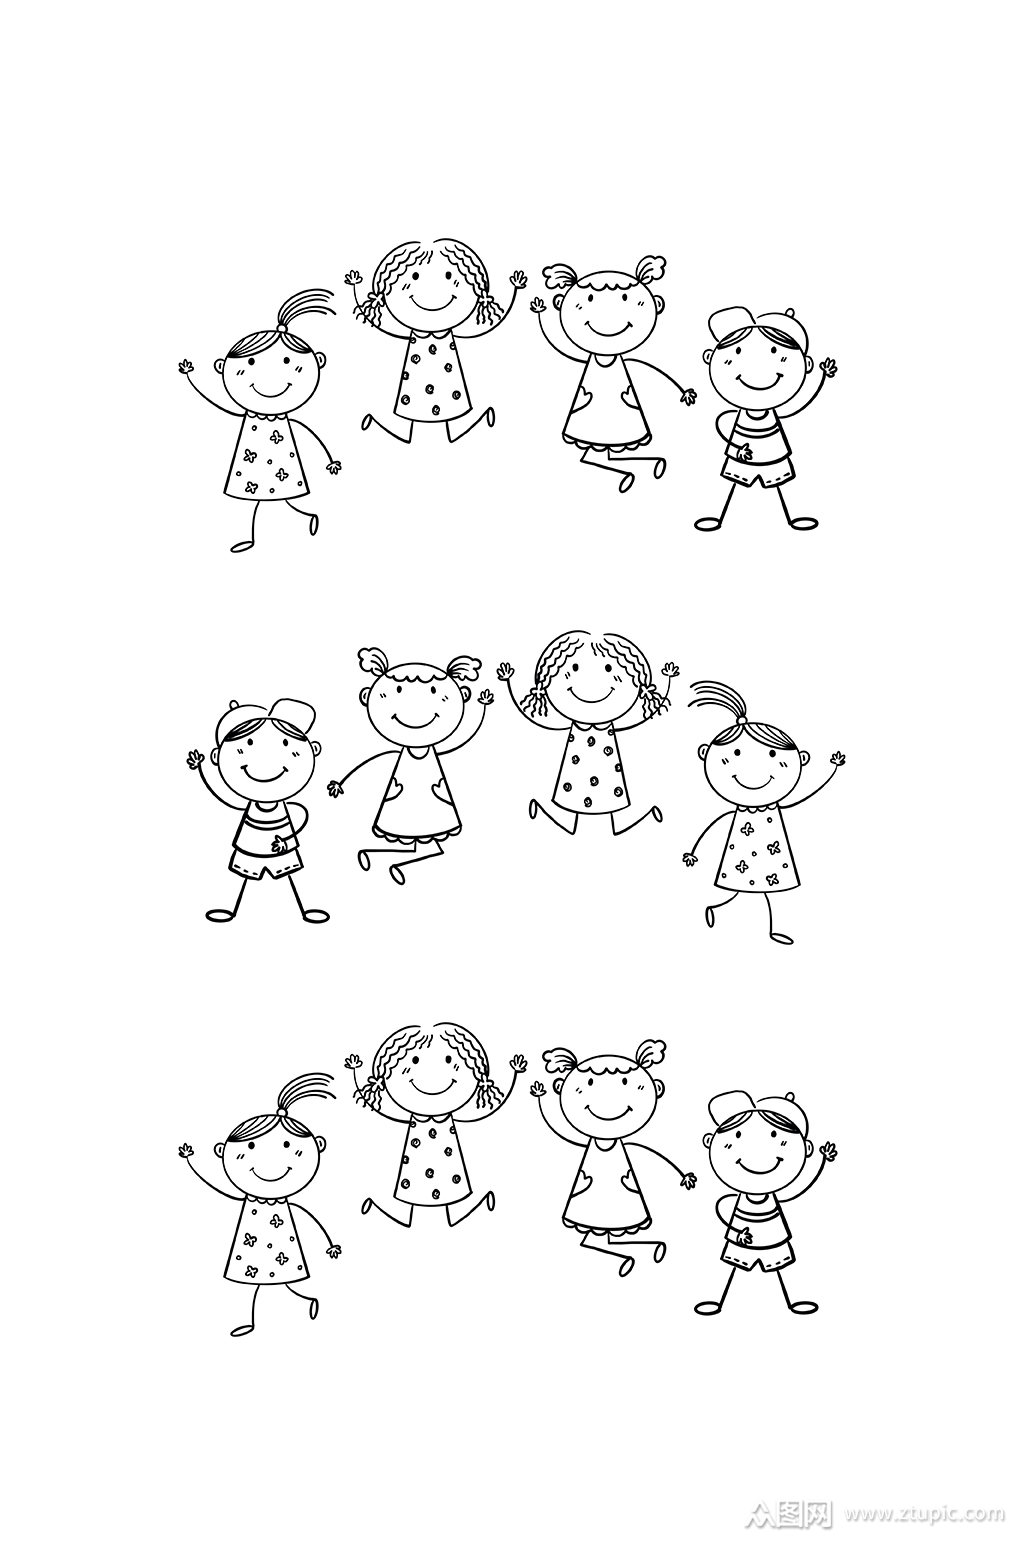 卡通小孩简笔画元素模板下载-编号856415-众图网